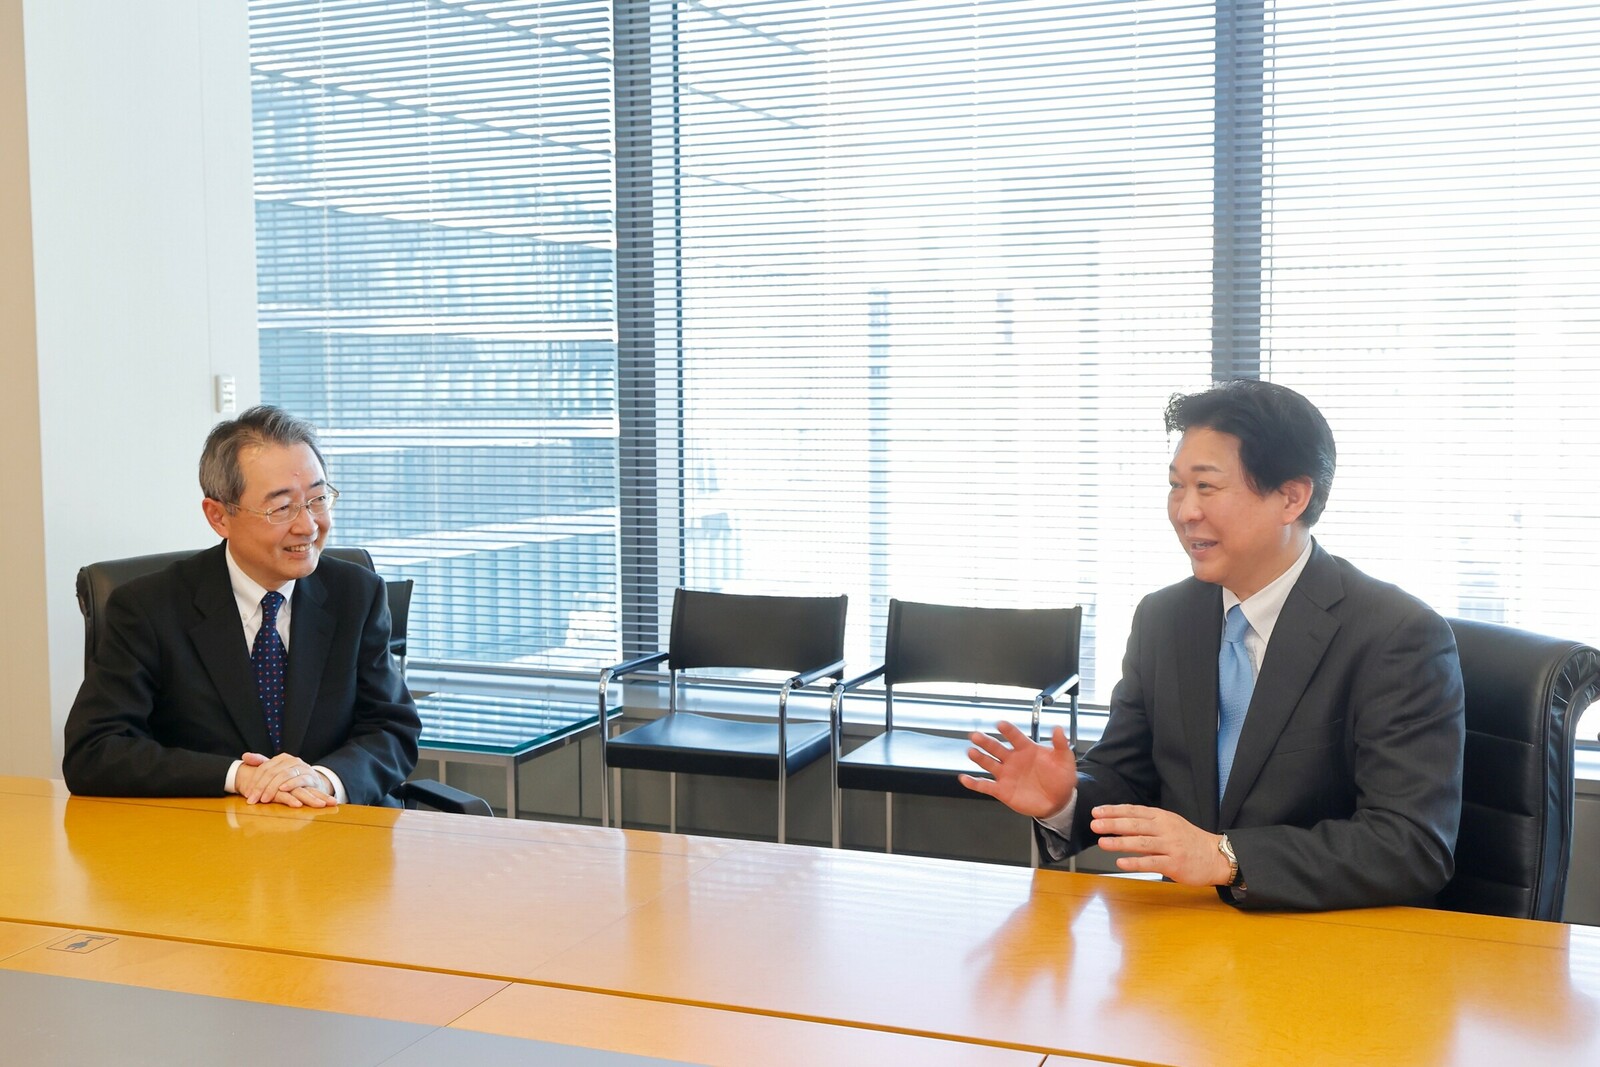 "Das ERP von SAP und die Fabrikautomatisierungsprodukte von Mitsubishi Electric werden zusammen neue Innovationen für die Lieferkette bringen", erklärt Hirofumi Suzuki (r.) im Gespräch mit Yoshikazu Miyata.